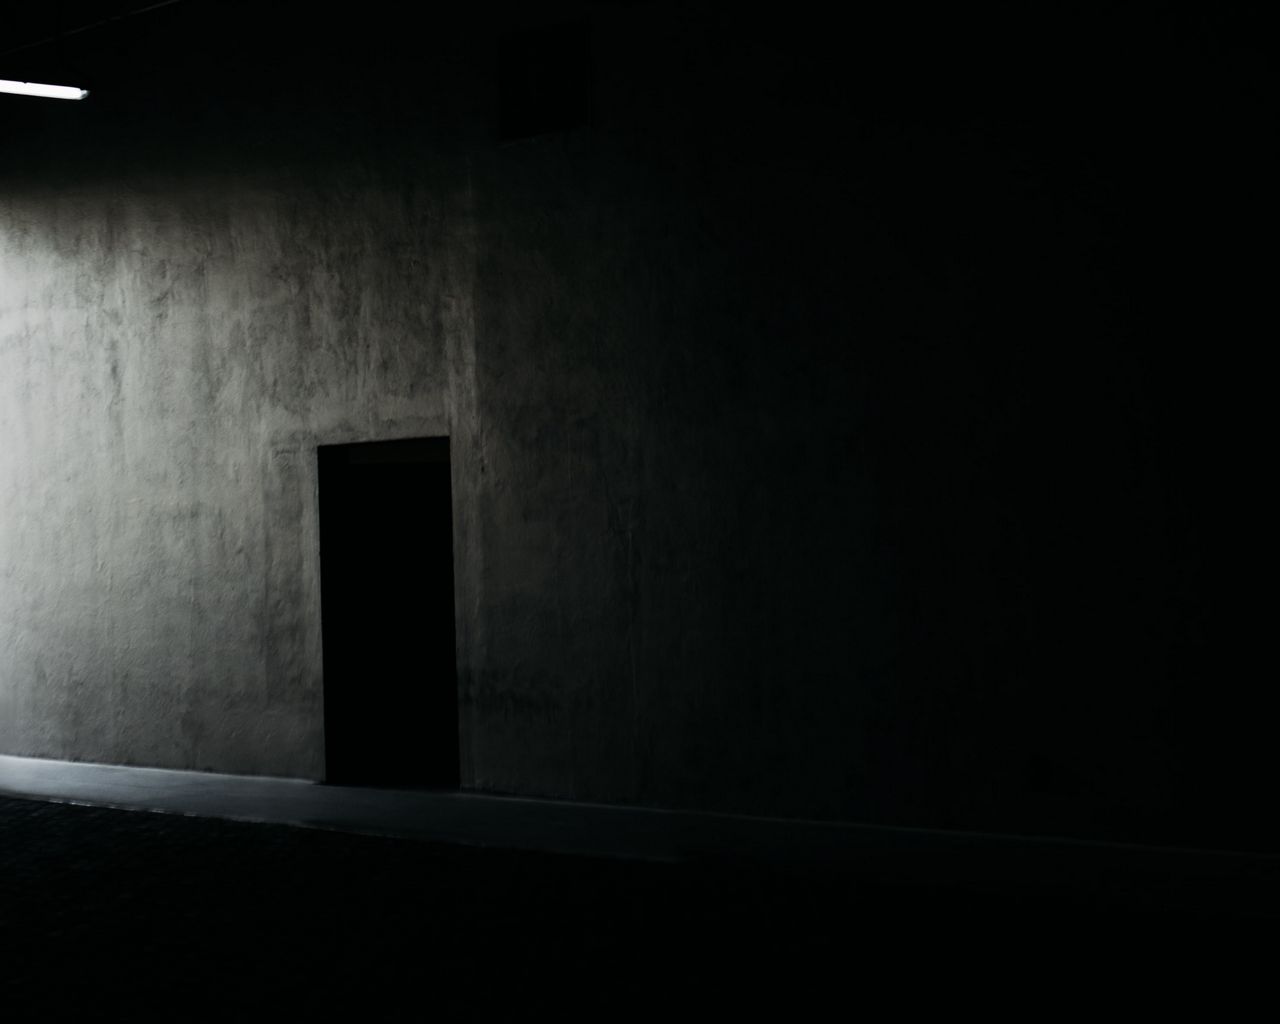 Dark rooms 3. Человек в темном помещении. Клетка в тёмном помещении. Робот на складе в темноте черный фон. Маленькая клетка в тёмном помещении.